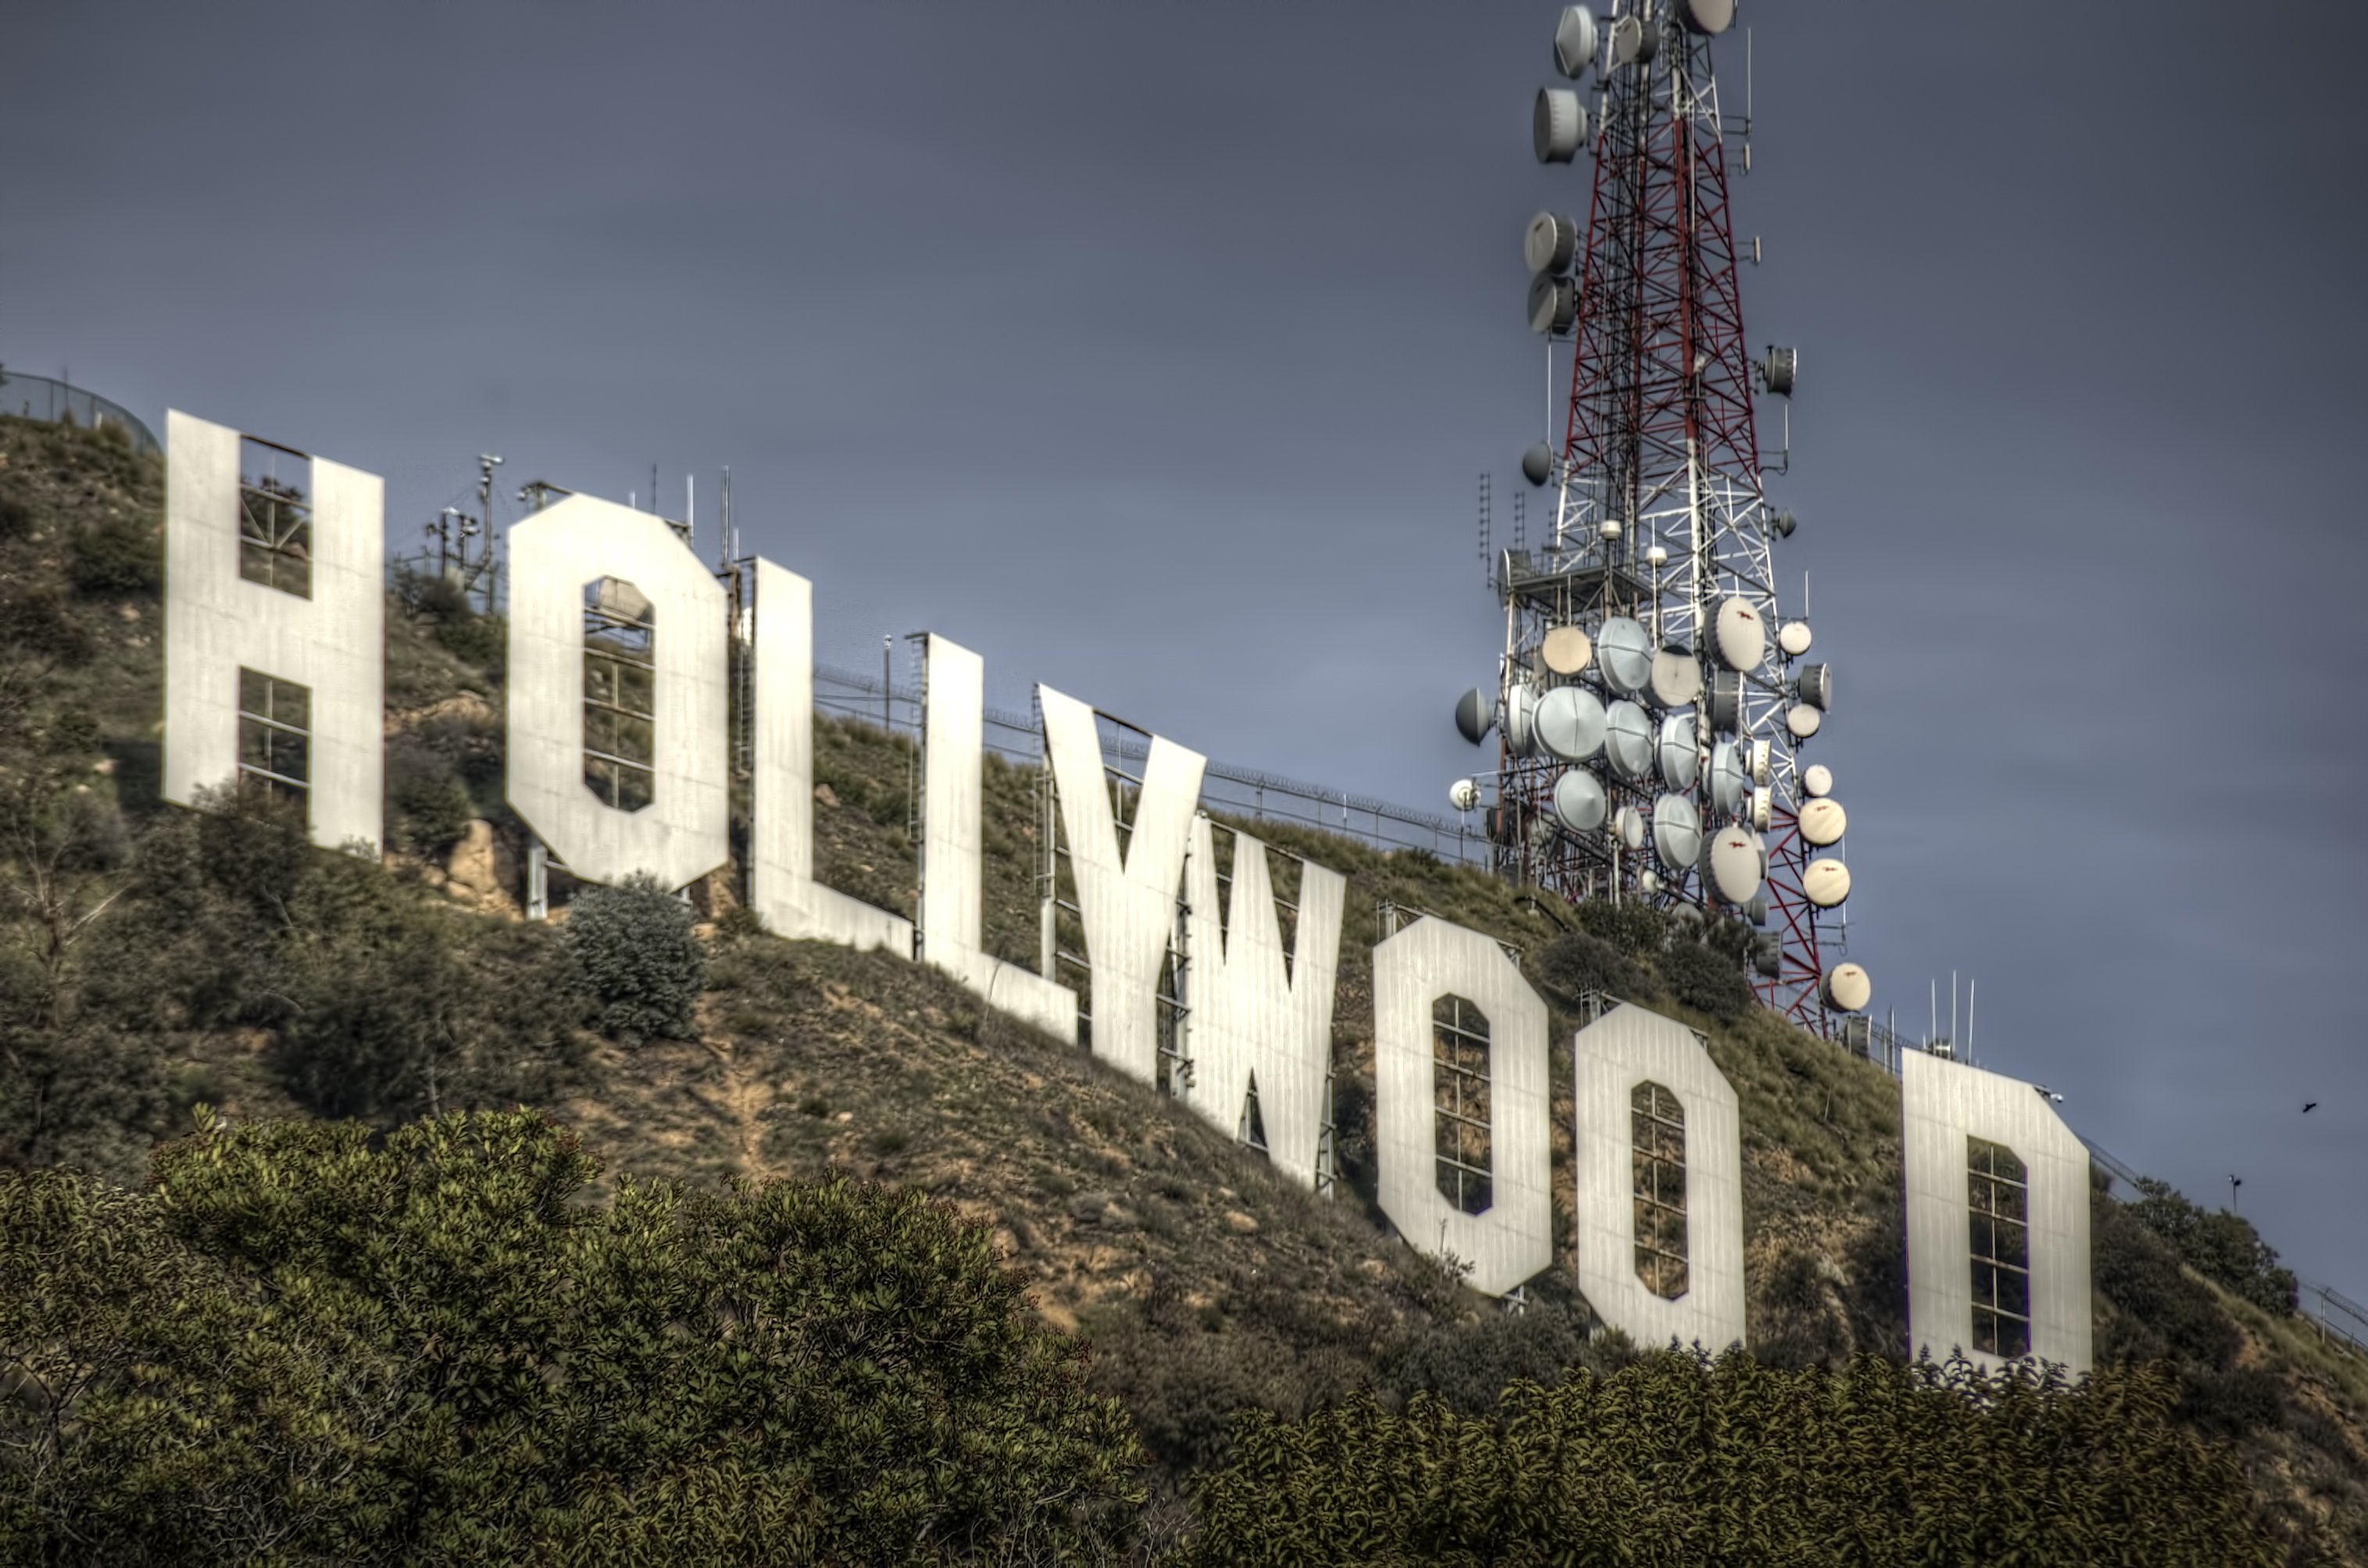 Голливуд это город. Лос-Анджелес Калифорния Голливуд. США Лос Анджелес Голливуд. Лос Анджелес вывеска Голливуд. Голливуд киноиндустрия Лос-Анджелес.